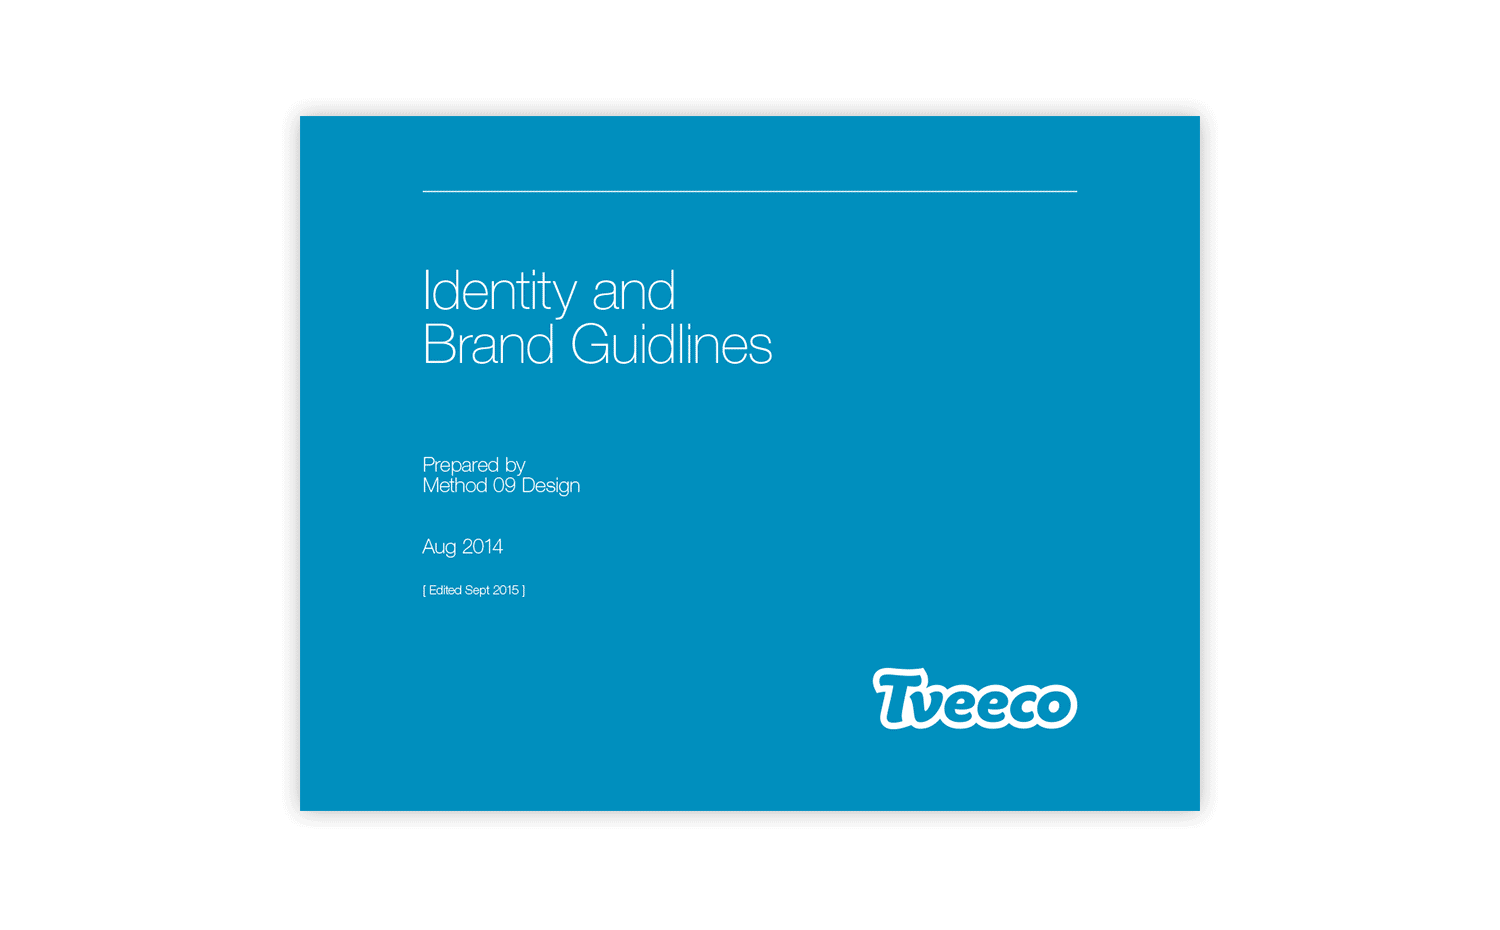 Tveeco brand and identity guidelines document